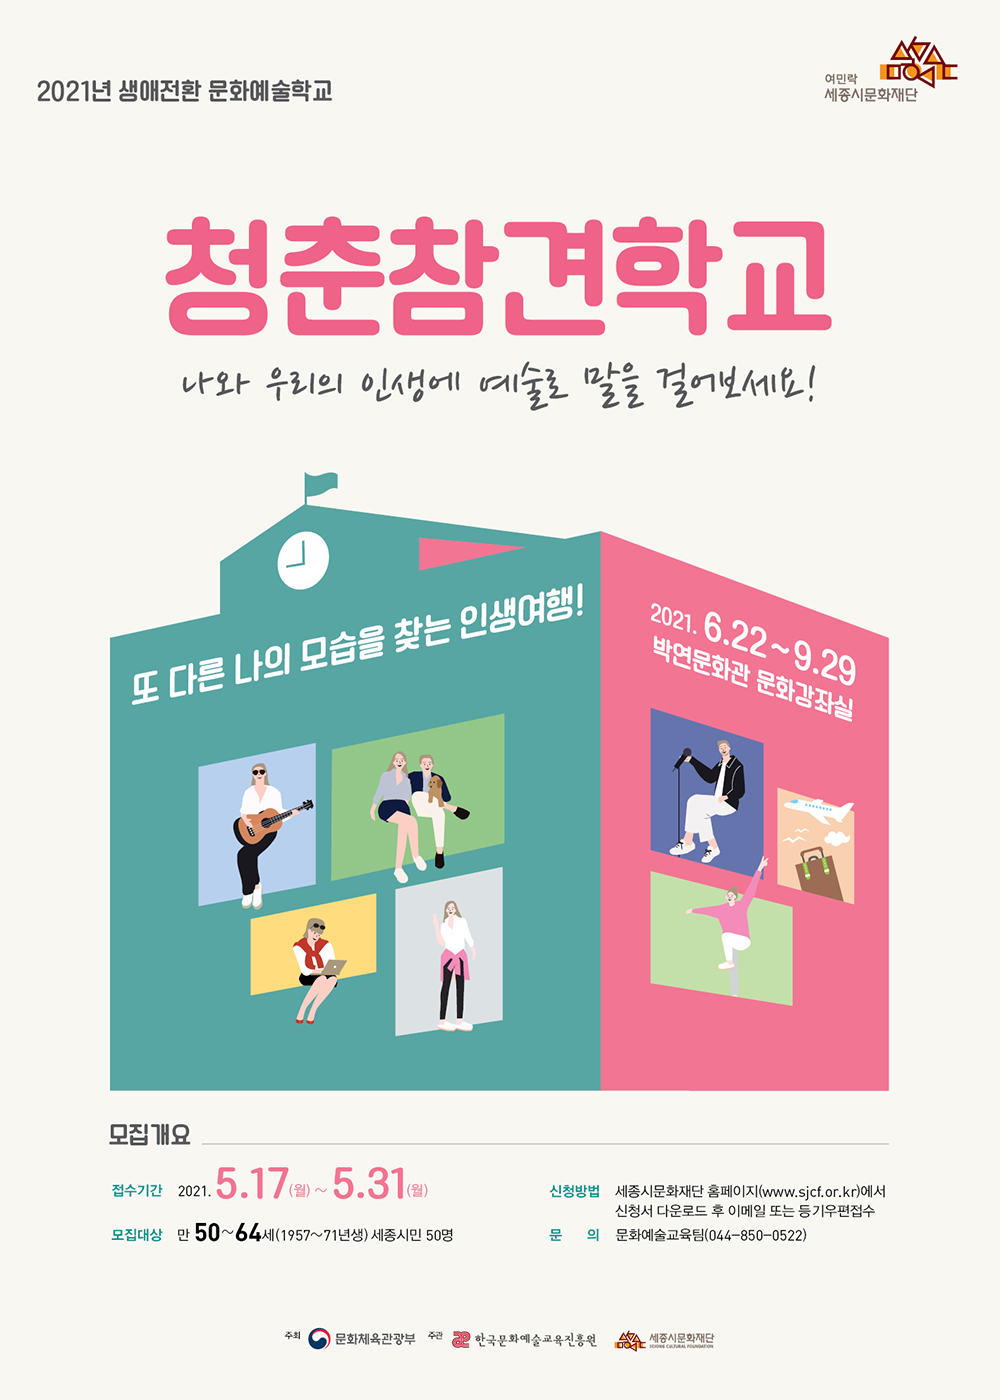 「2021년 생애전환 문화예술학교」‘청춘참견학교’ 참가자 모집 포스터